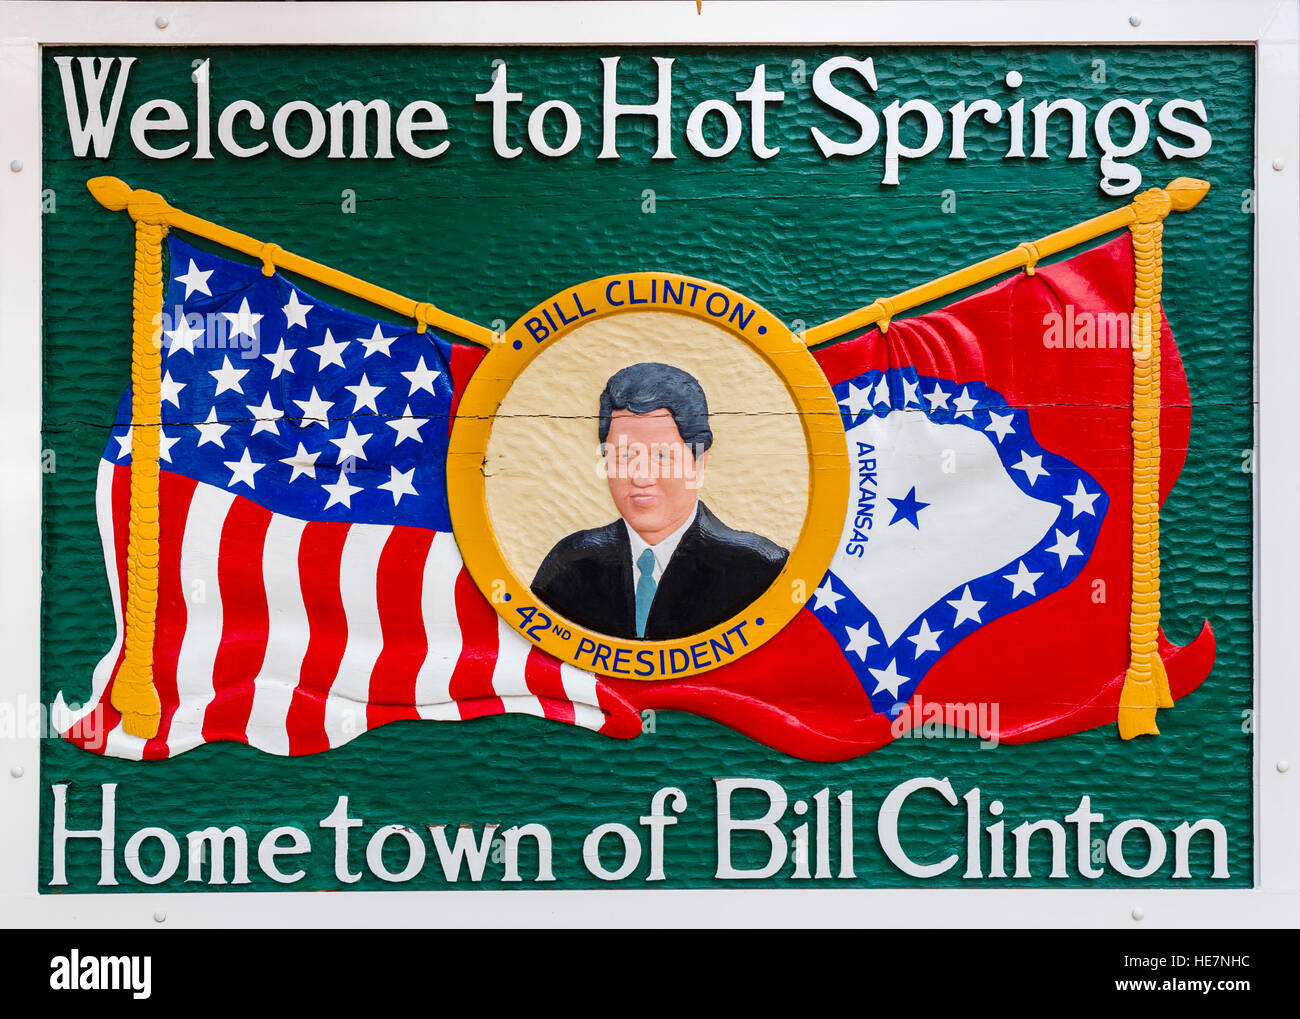 Hot Springs, Arkansas, USA. Panneau de bienvenue avec l'ex-Président Bill Clinton, qui a grandi dans la ville. Banque D'Images